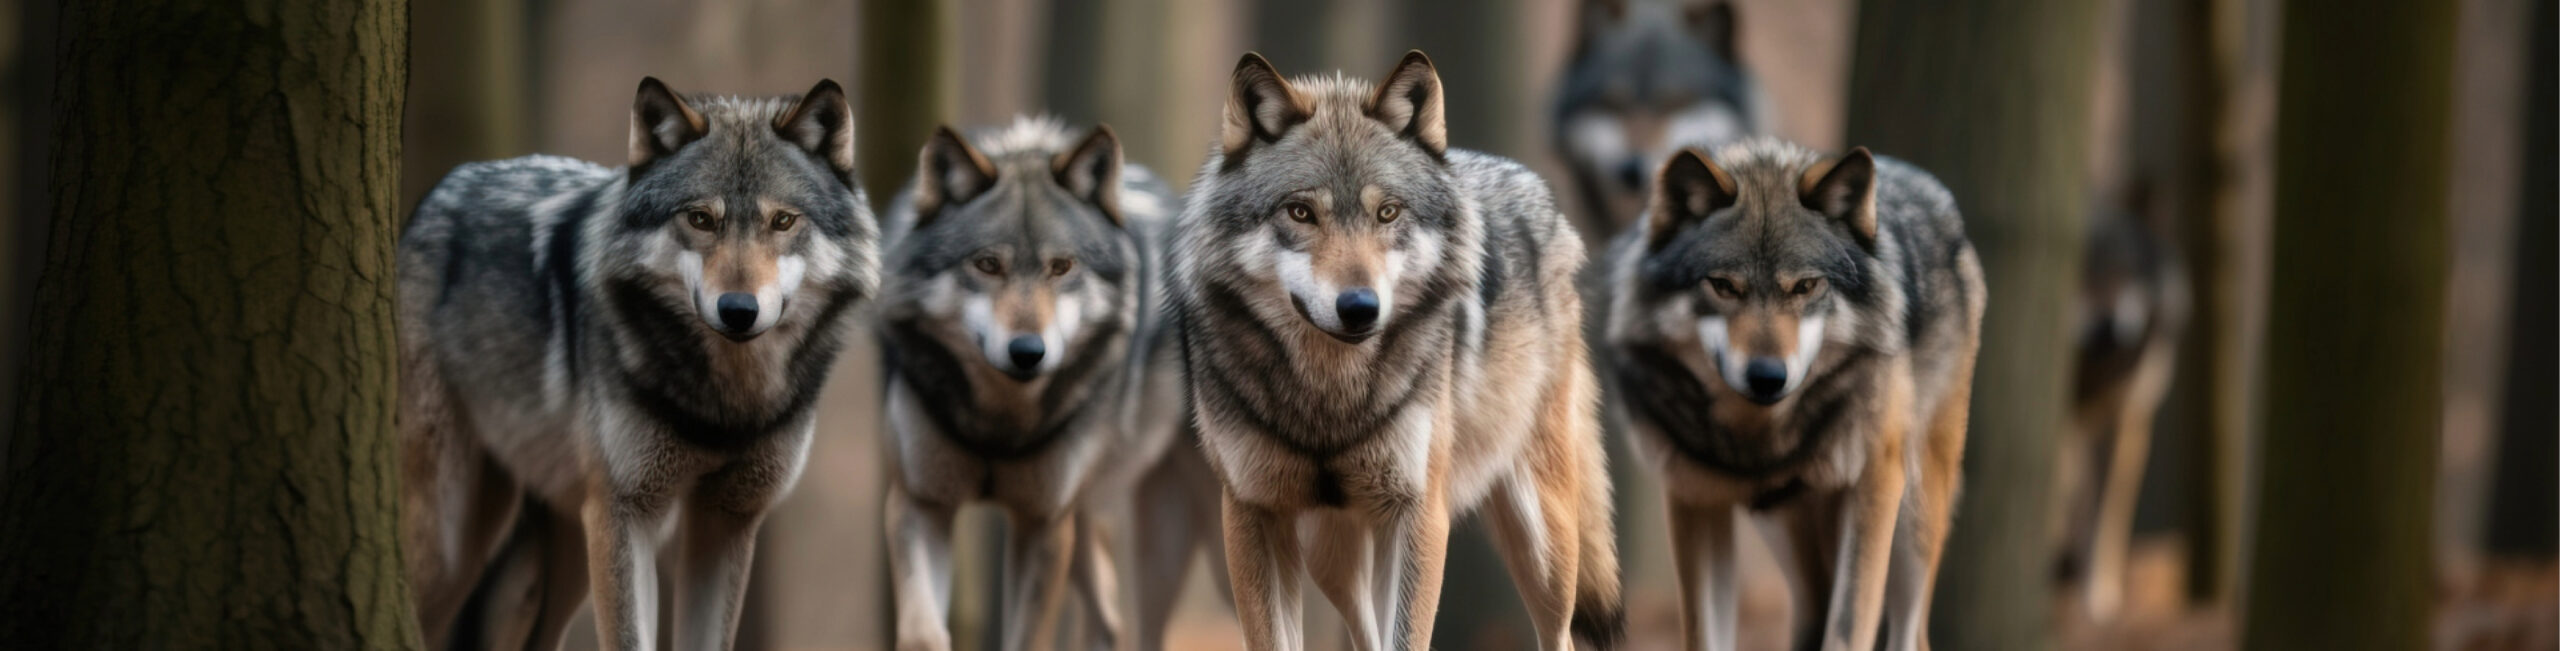 Vier weiß-graue Wölfe als Rudel im Wald. Im Hintergrund sind noch mehrere Wölfe in der Unschärfe zu sehen.